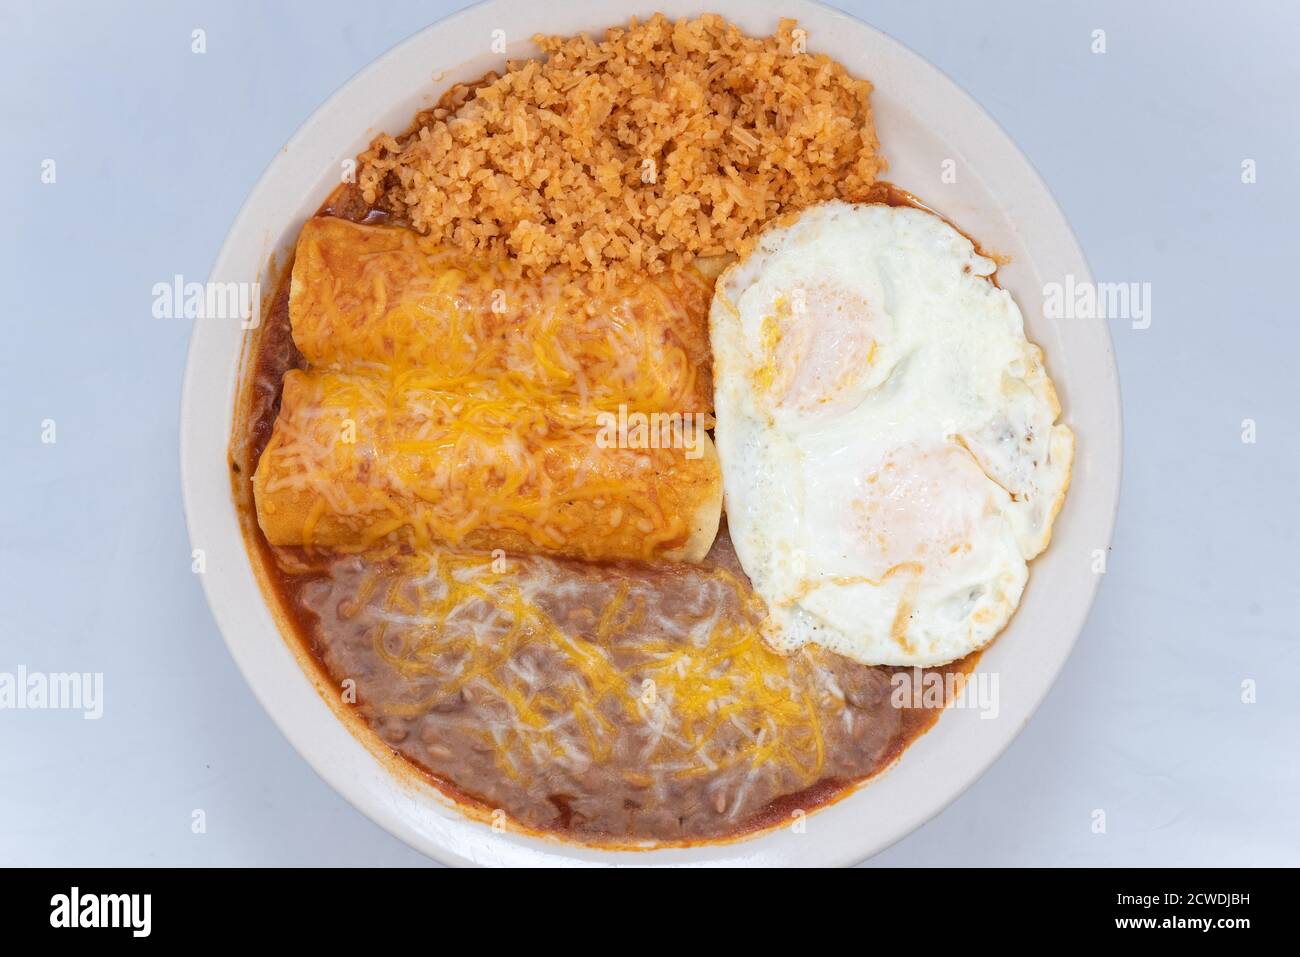 Blick von oben auf eine großzügige Mahlzeit von einem herzhaften Paar Frühstück Enchiladas kombiniert mit gebratenen Bohnen, Reis und Eiern. Stockfoto